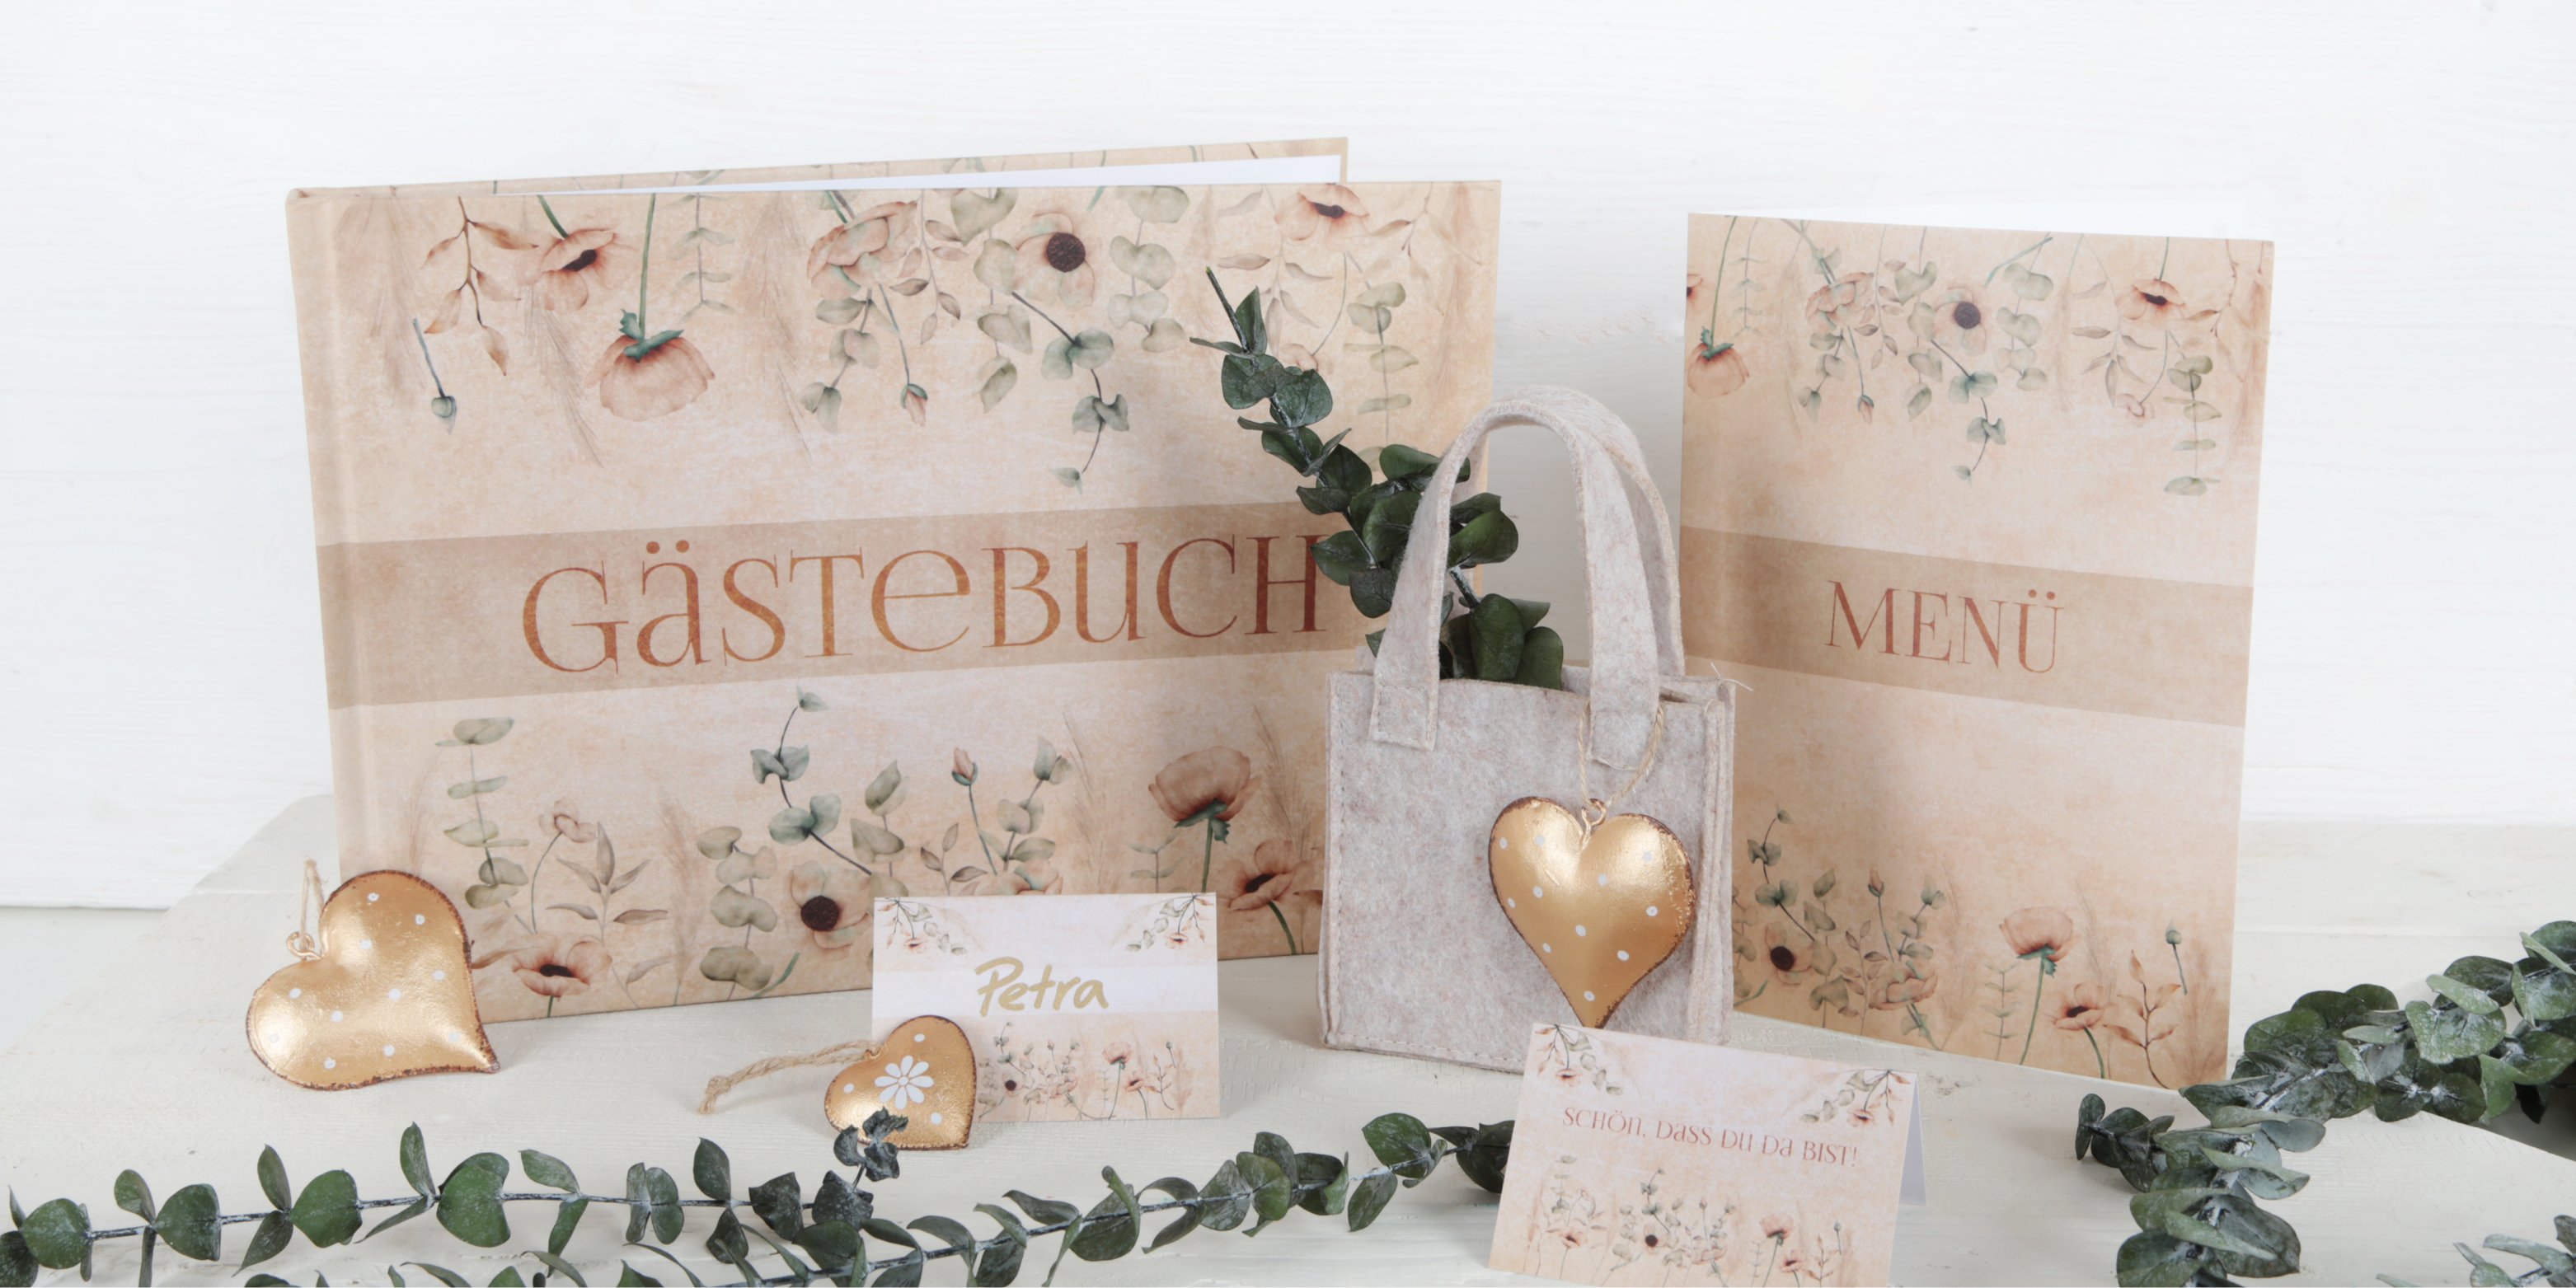 Hochzeitsdekoration im Boho-Stil mit Gästebuch, Menükarte, Tischkarte und Gastgeschenk Taschen aus Filz.